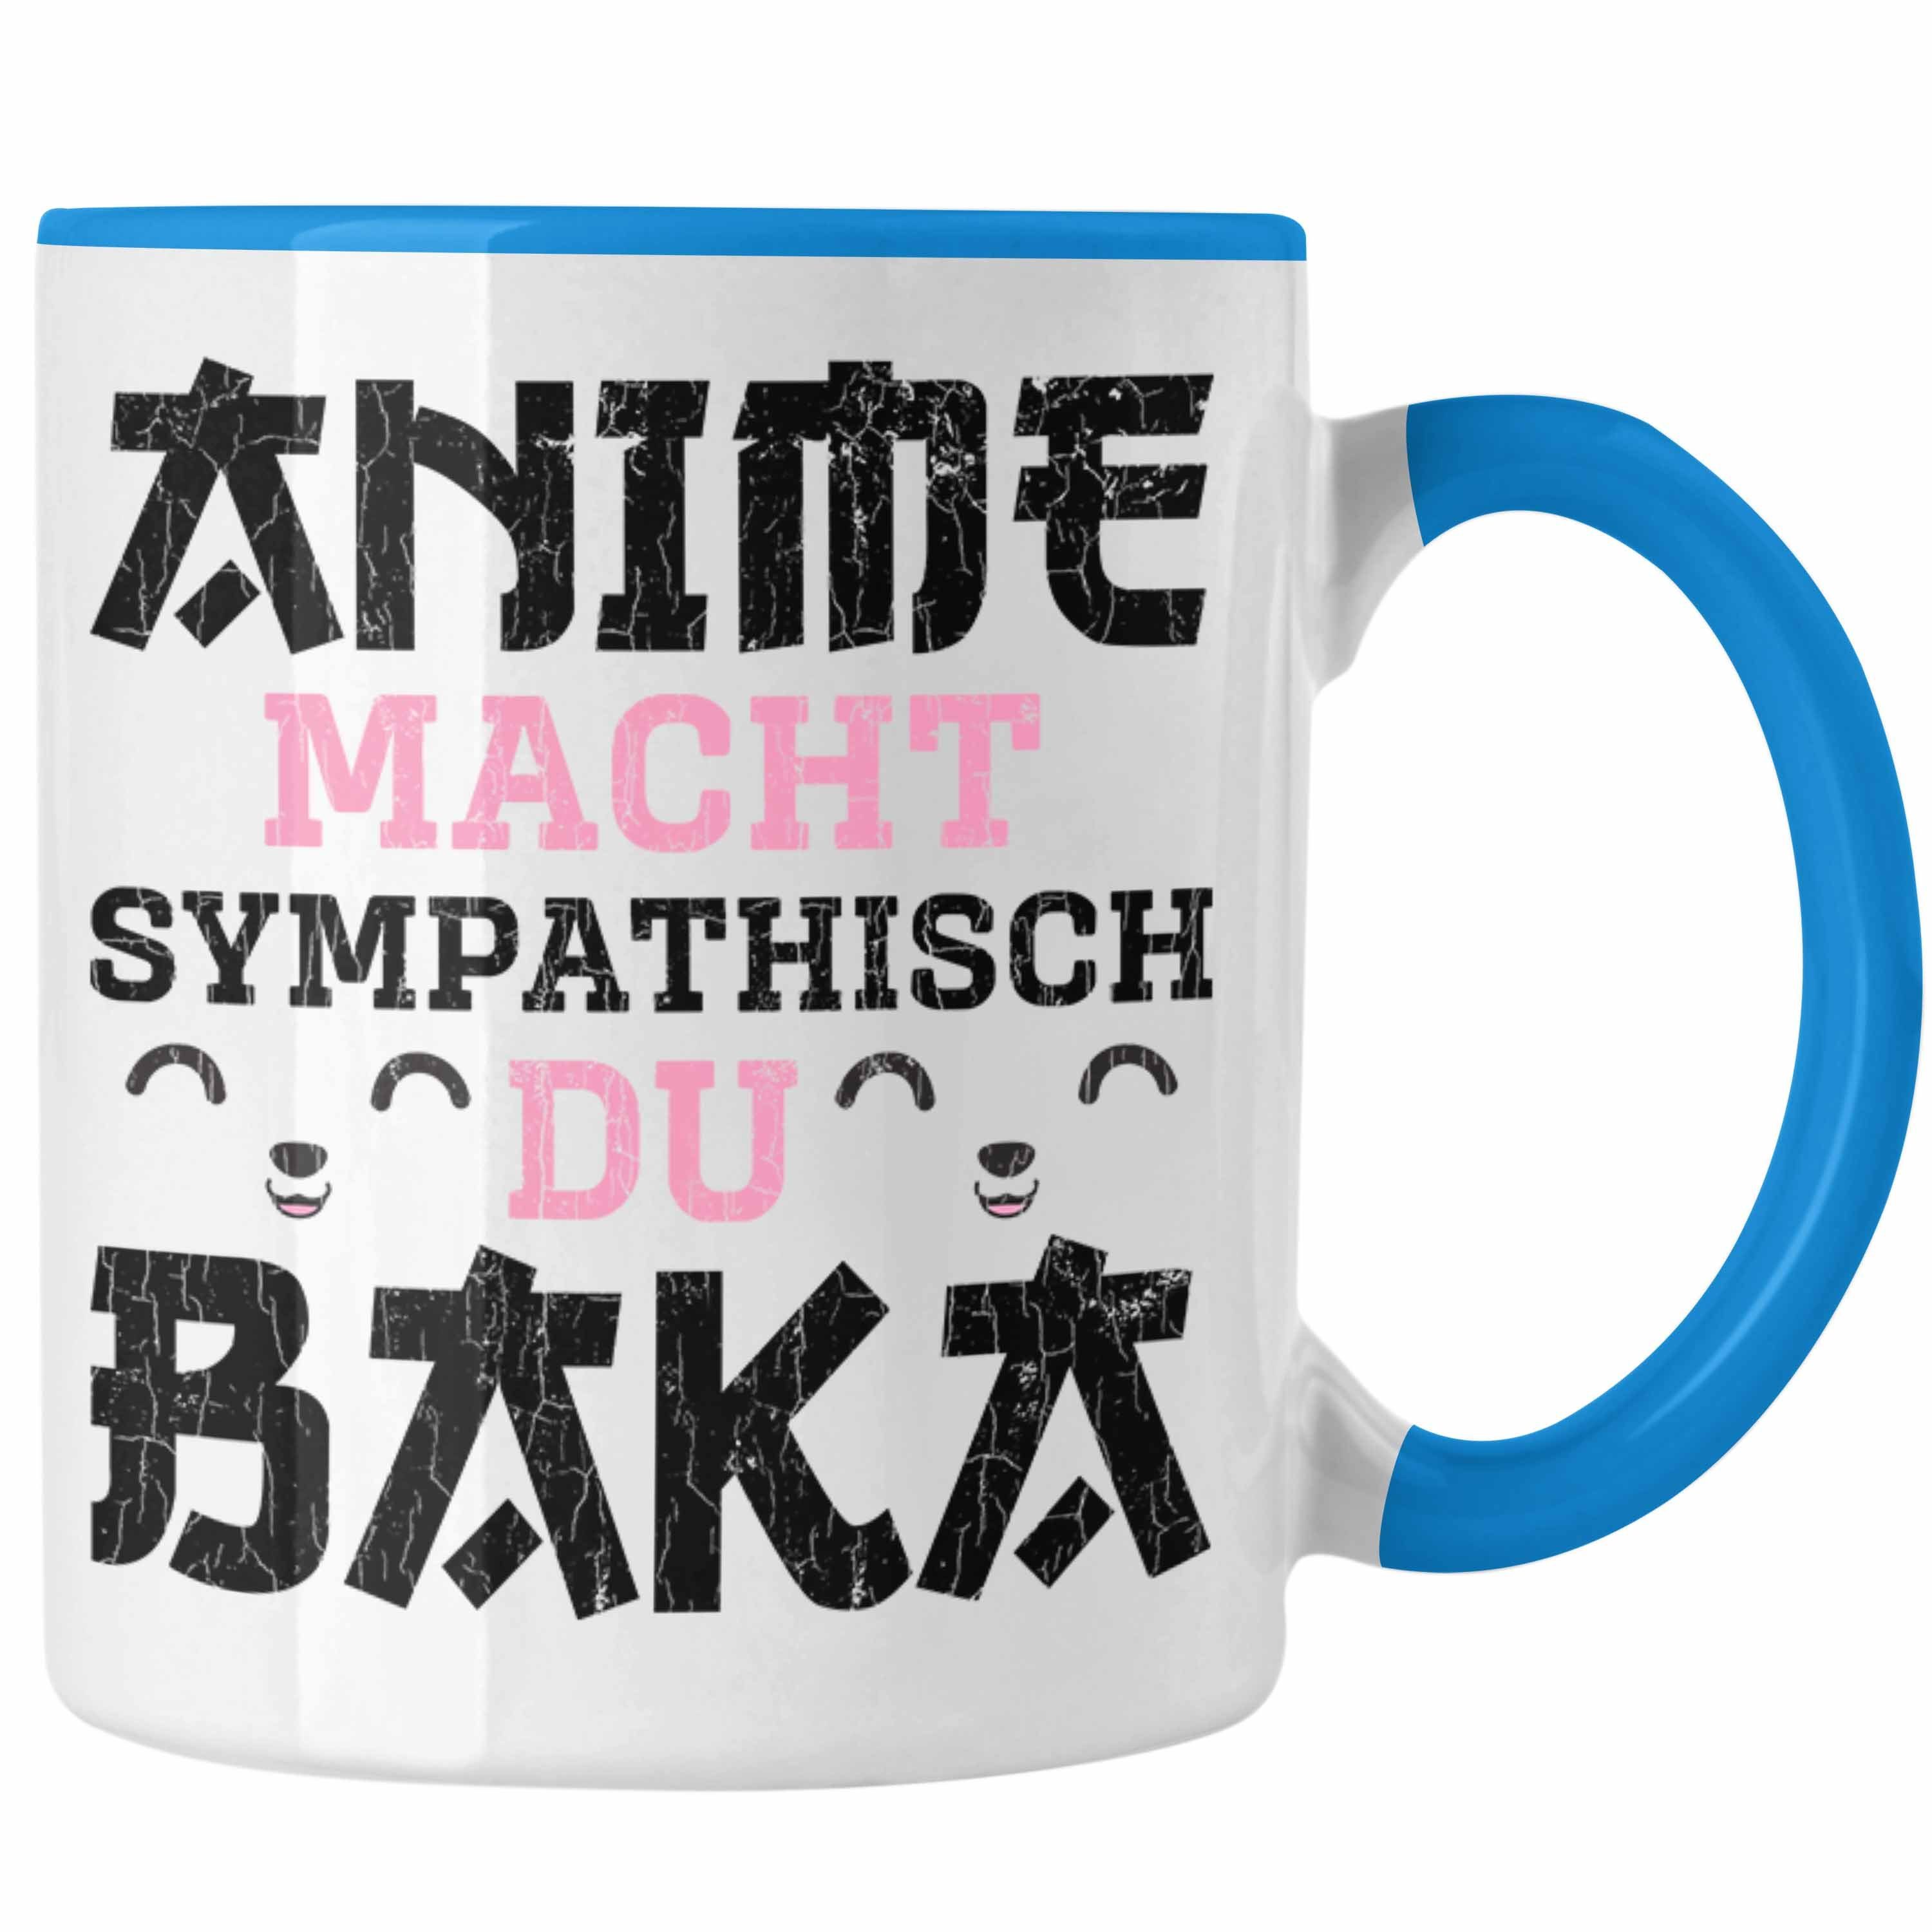 Trendation Tasse Trendation - Anime Tasse Geschenk Spruch Kaffeetasse Geschenke Deko Anme Fan Sympathisch Blau